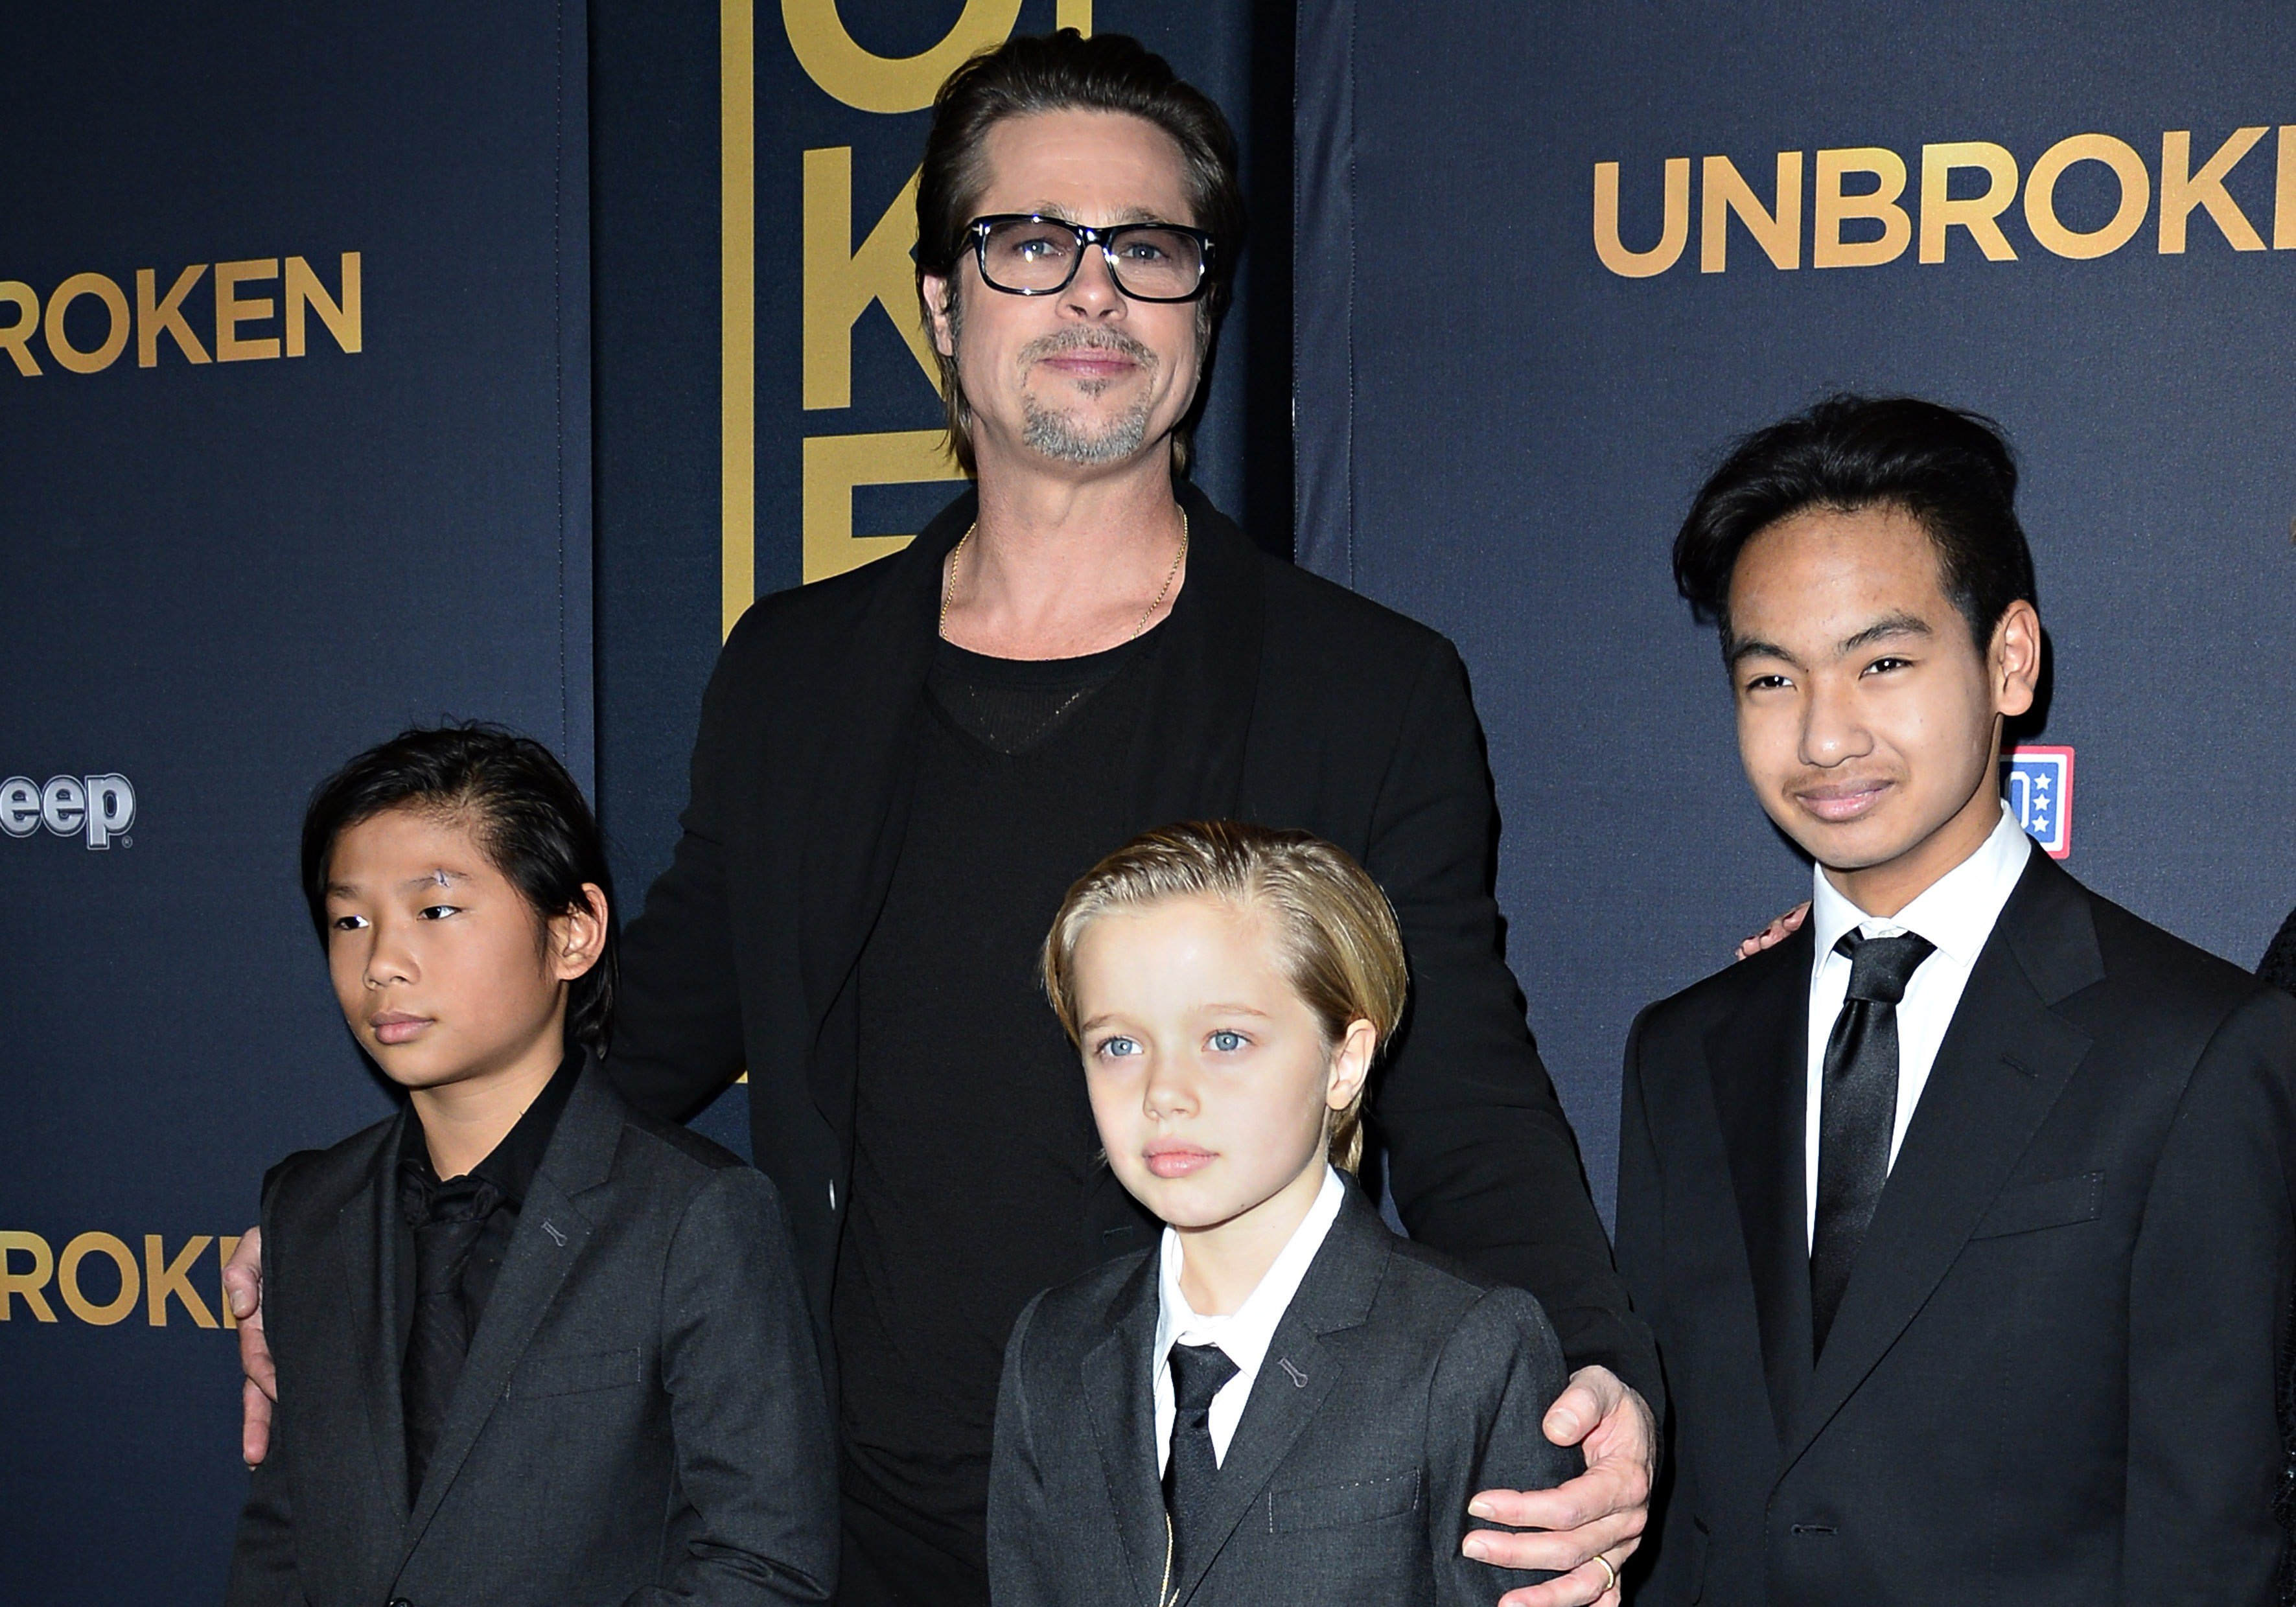 Brad Pitt y sus hijos Pax, Shiloh y Maddox Jolie-Pitt en el estreno en Estados Unidos de "Unbroken", el 15 de diciembre de 2014, en Hollywood, California. | Foto: Getty Images